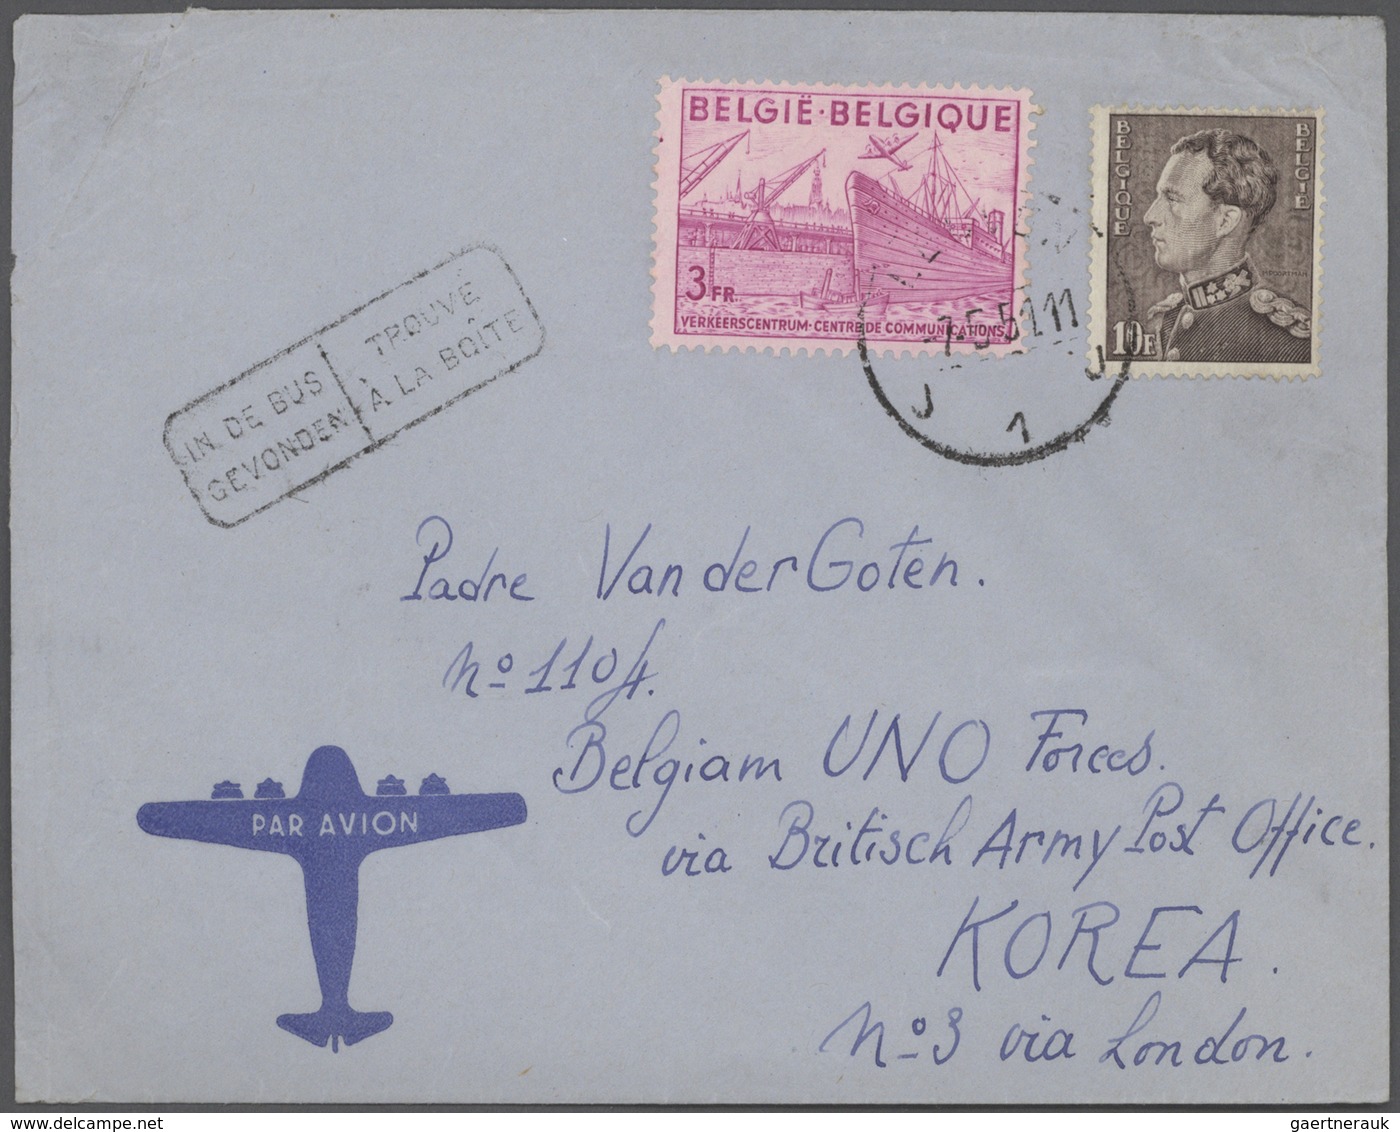 Korea-Süd: Korean War, Belgian contingent: 1951/54, covers (9 inc. a ppc) from Belgium to "Belgian U